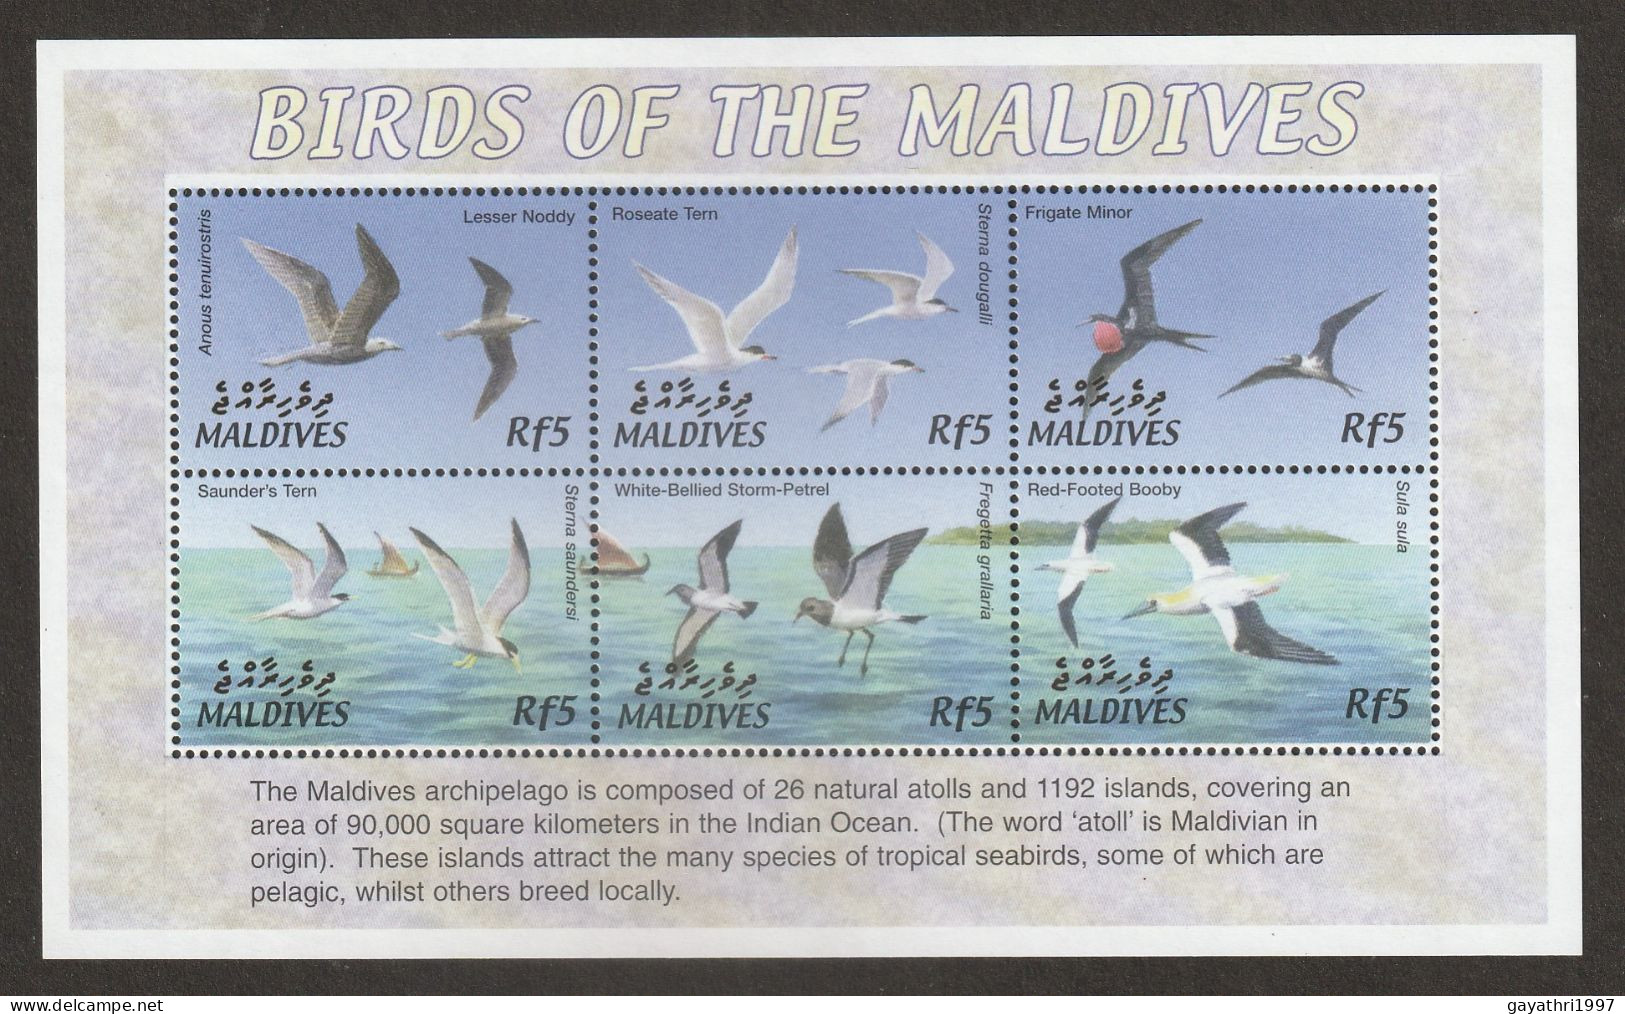 Maldives Birds Miniature Sheet Mint Good Condition (S-60) - Climbing Birds